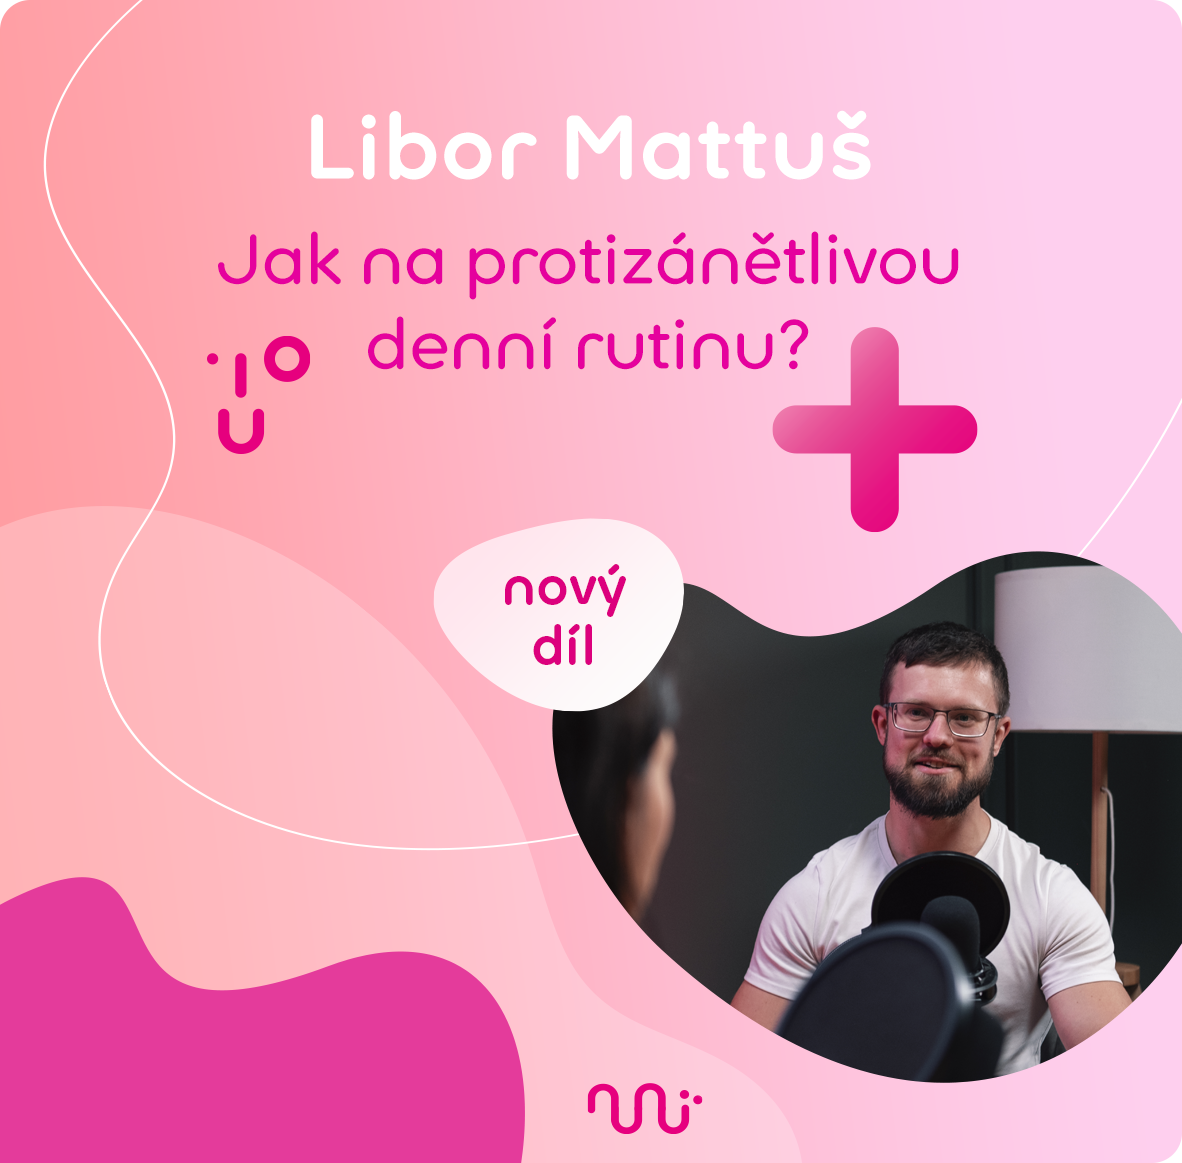 Libor Mattuš , Pilulka , Životozprávy